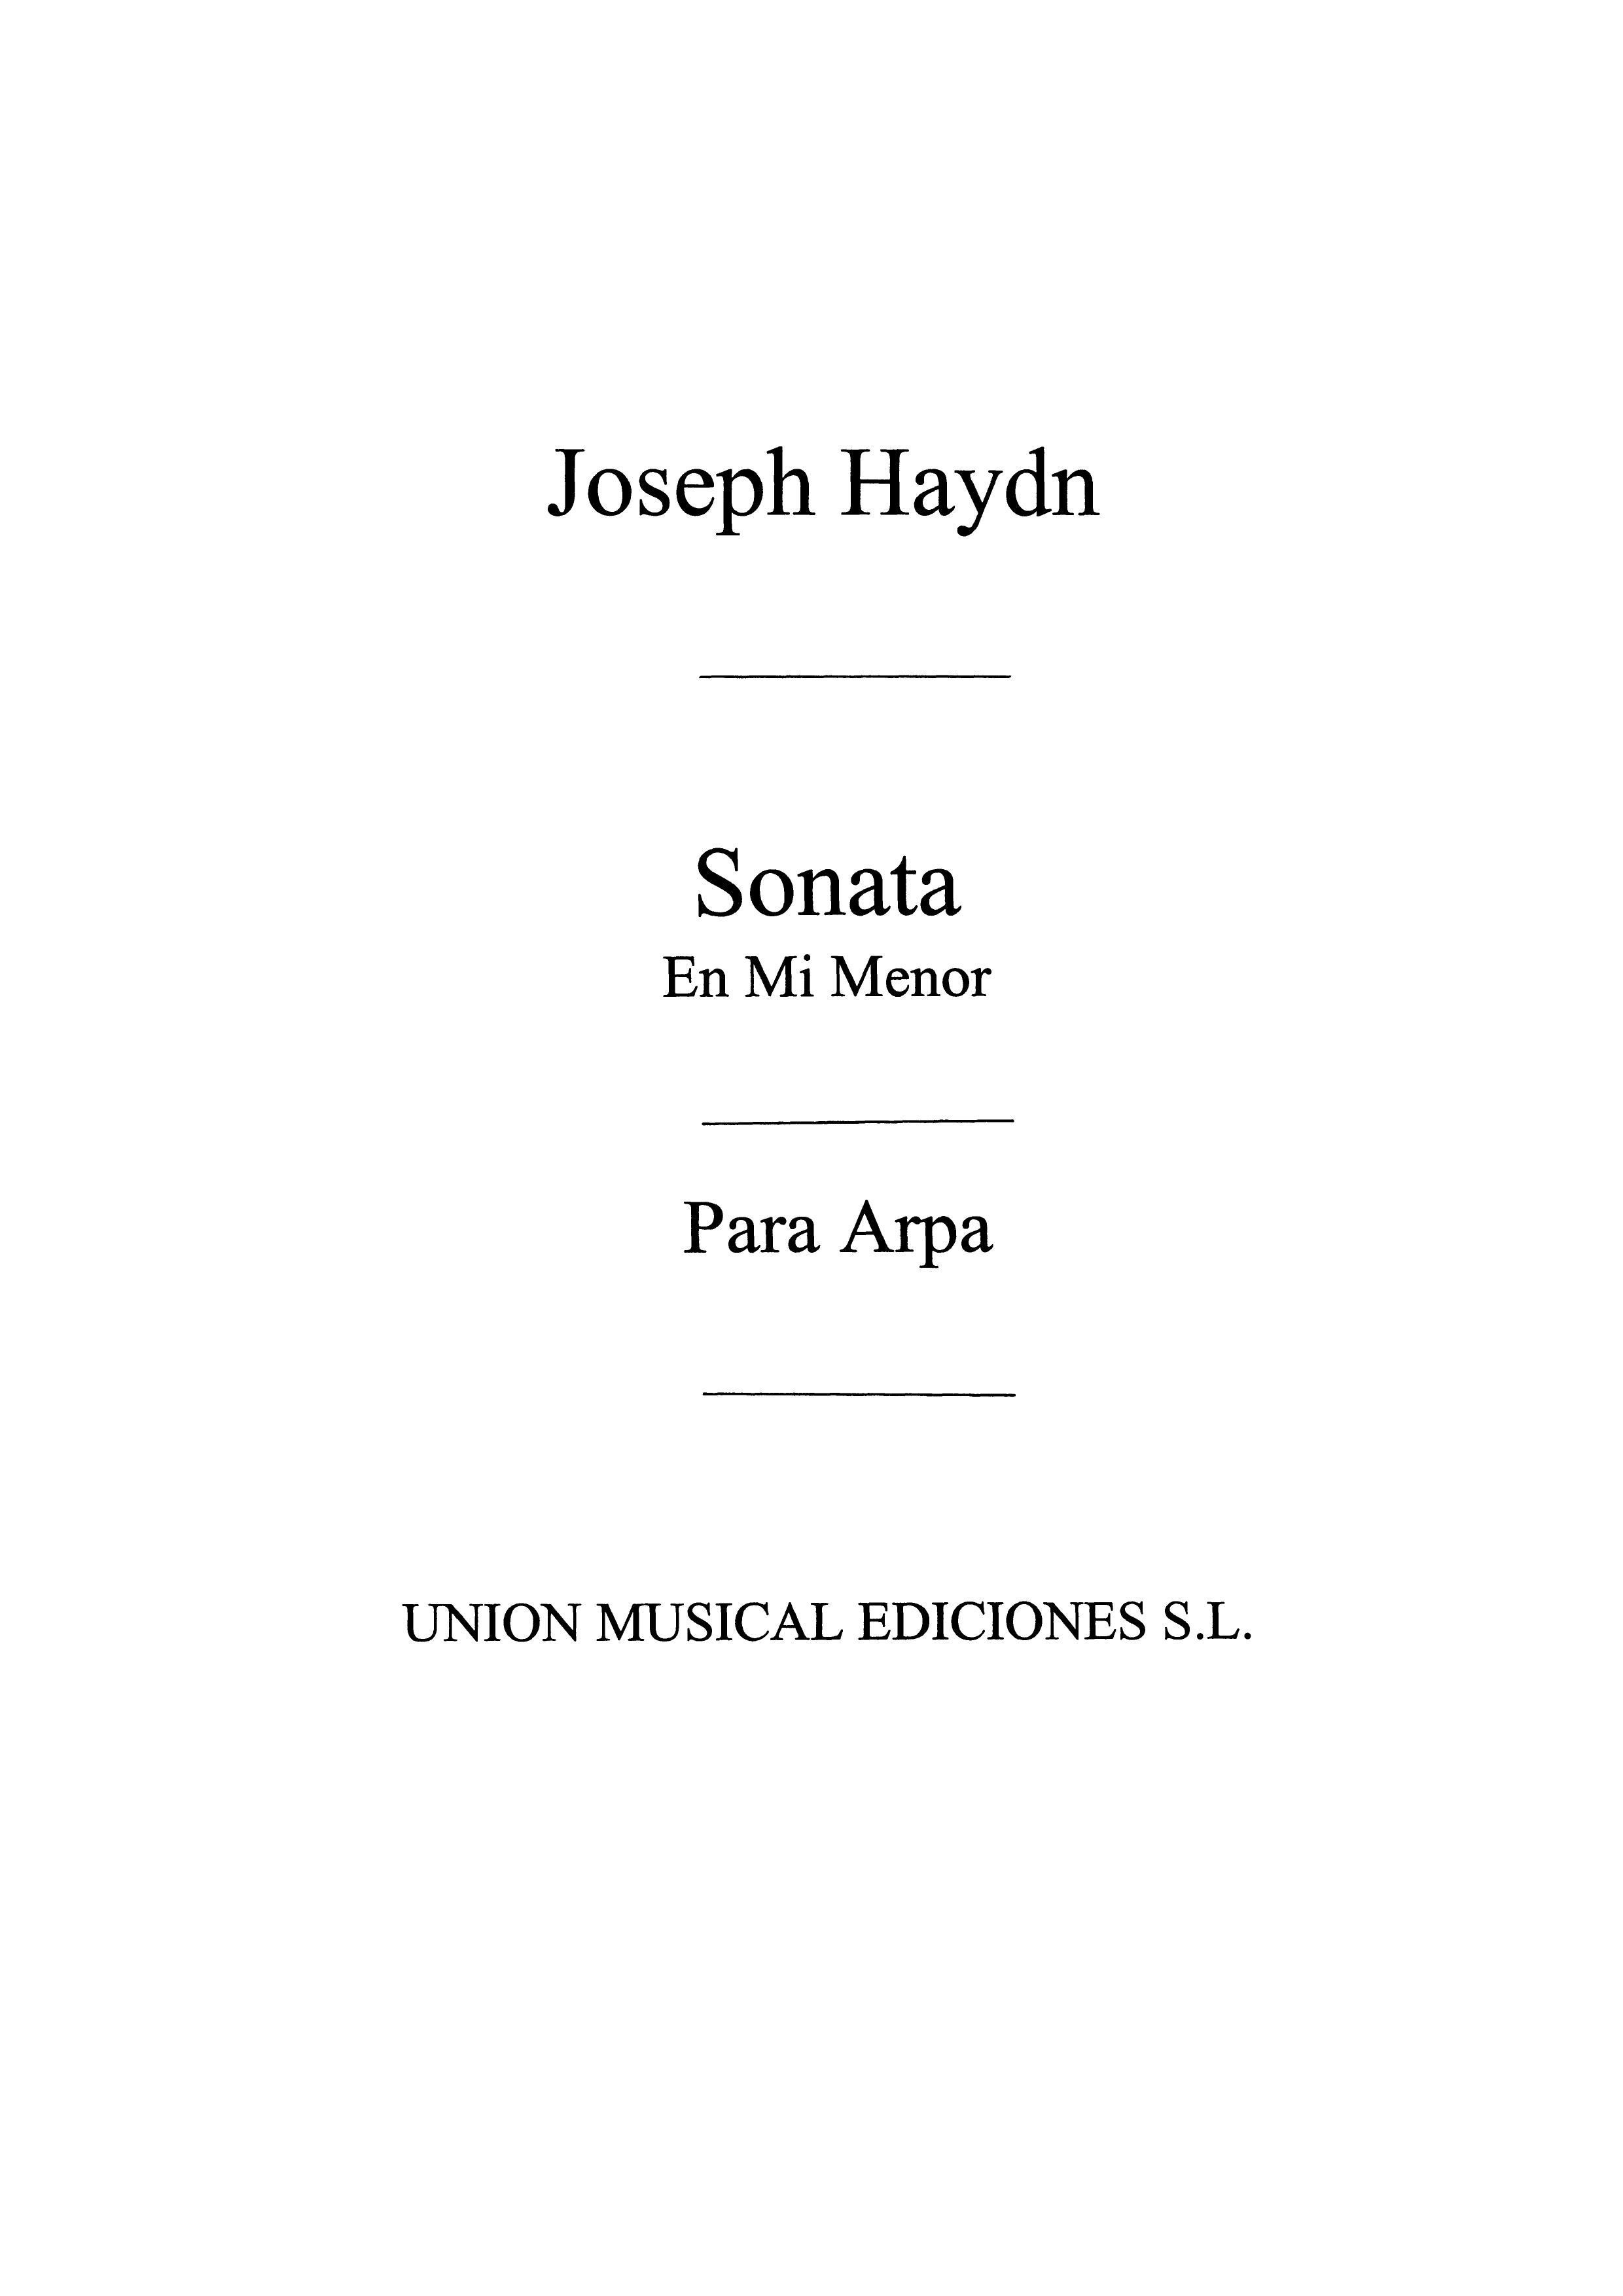 Haydn: Sonata for Harp